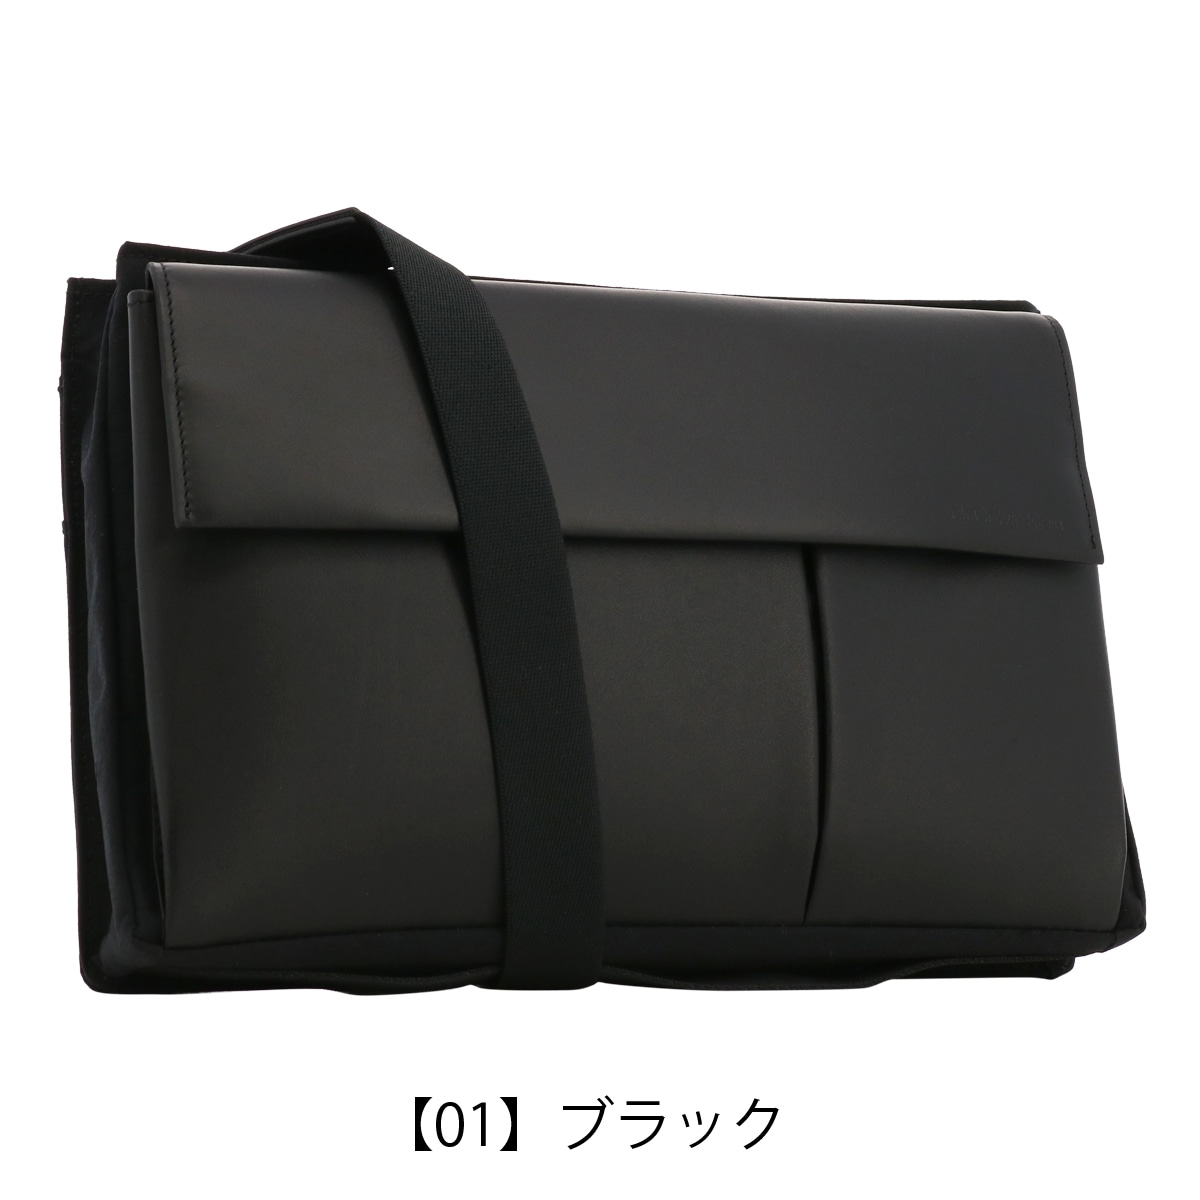 未使用新品 ハンドバッグ クラッチバック ブラック 黒 - バッグ